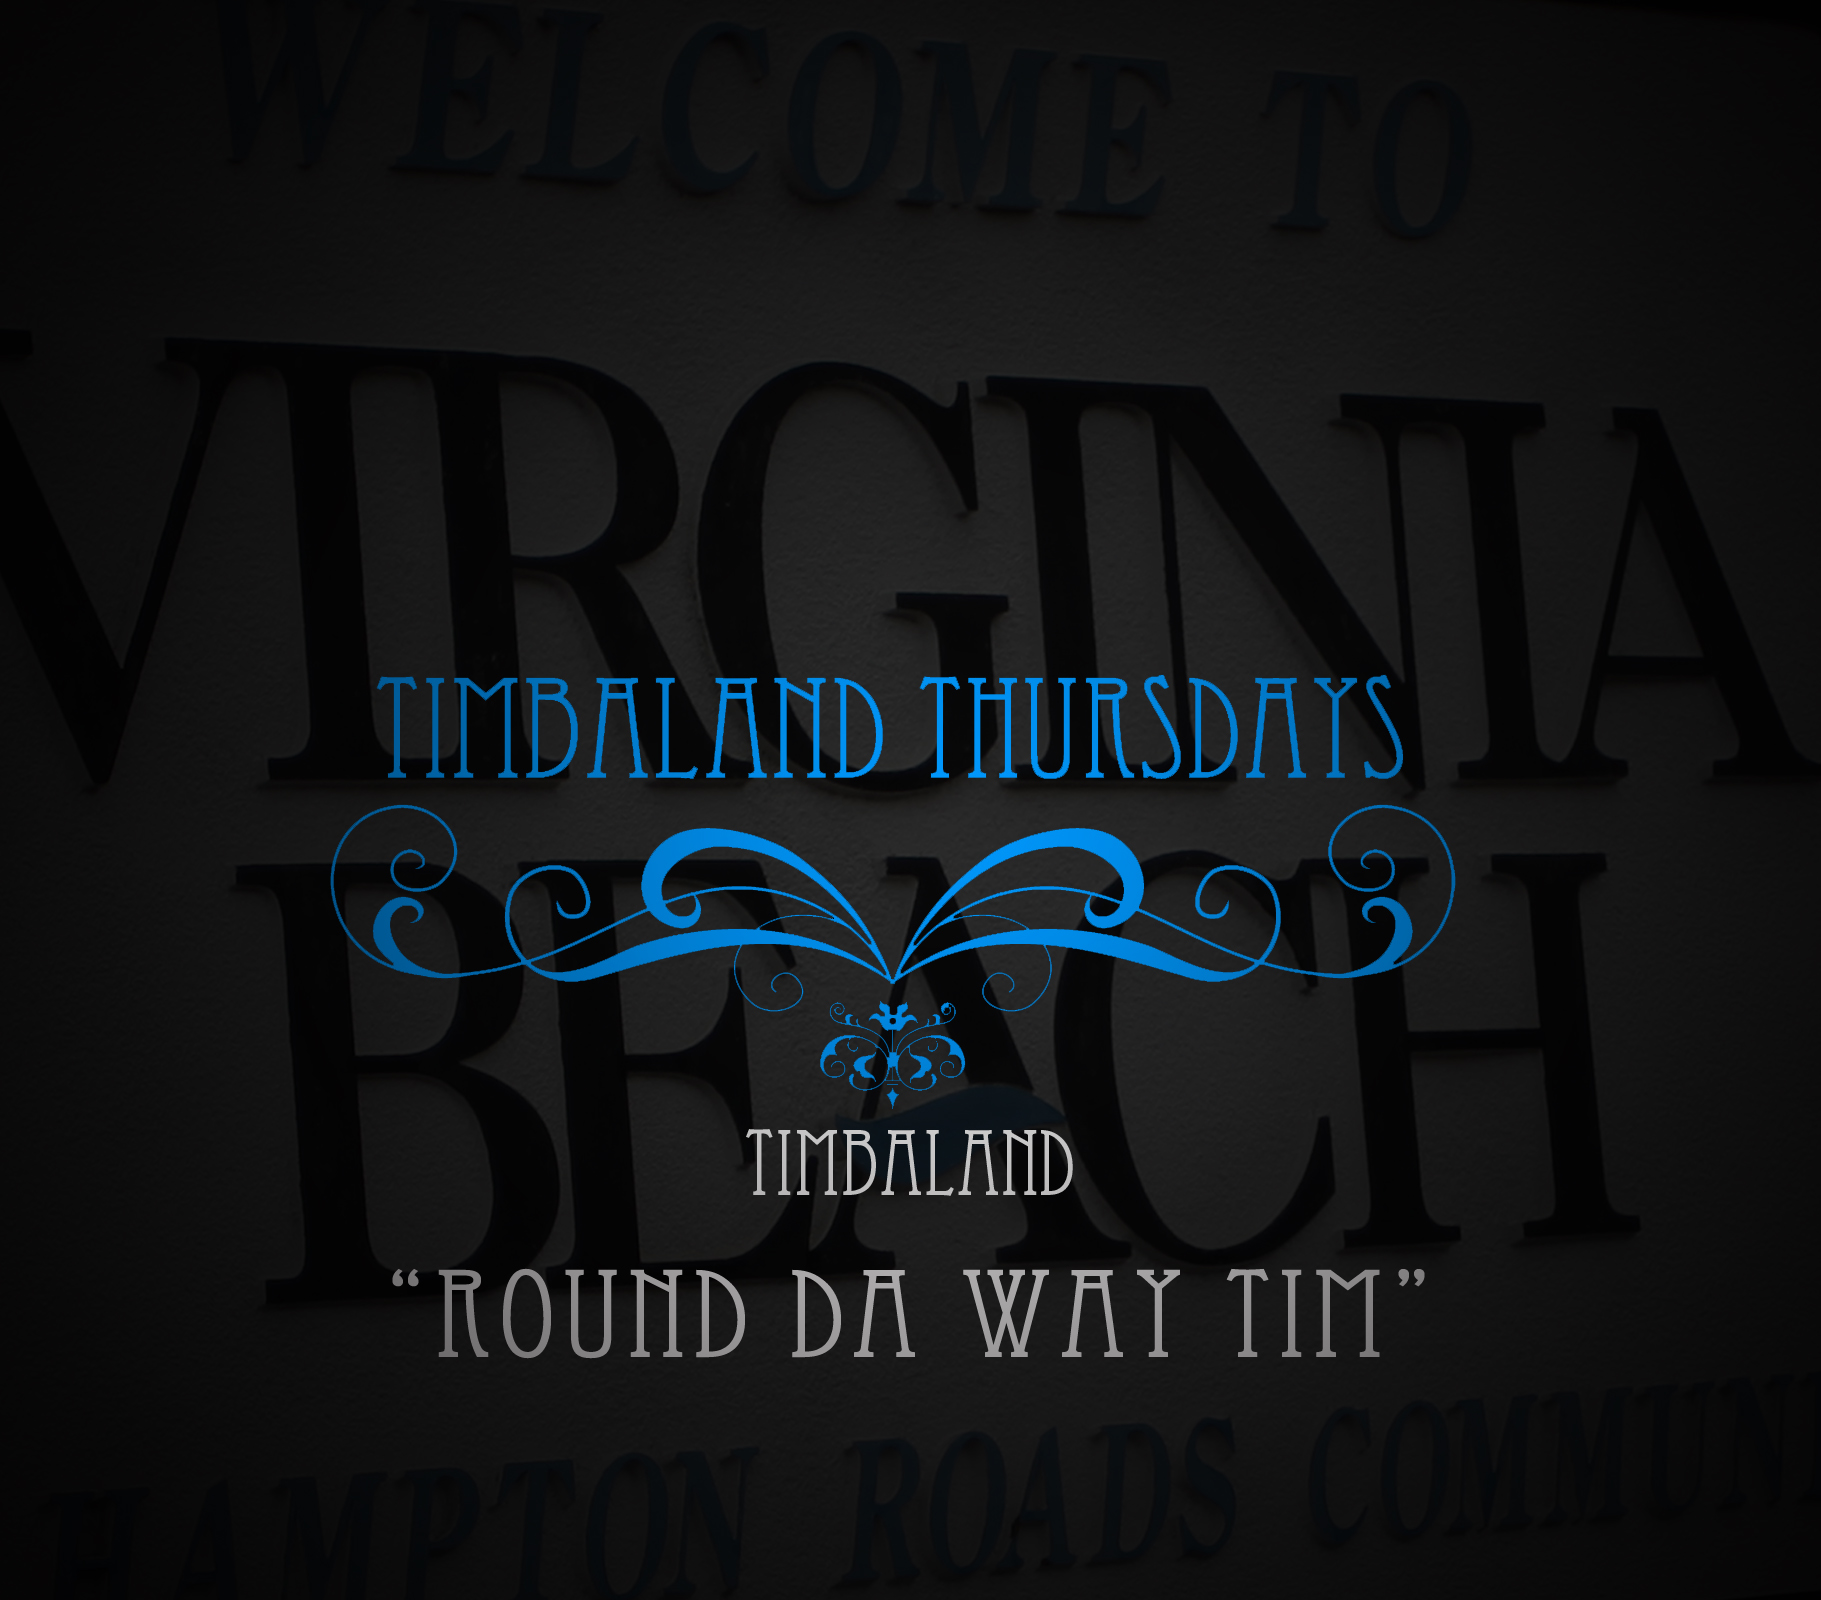 Timbaland – Round Da Way Tim